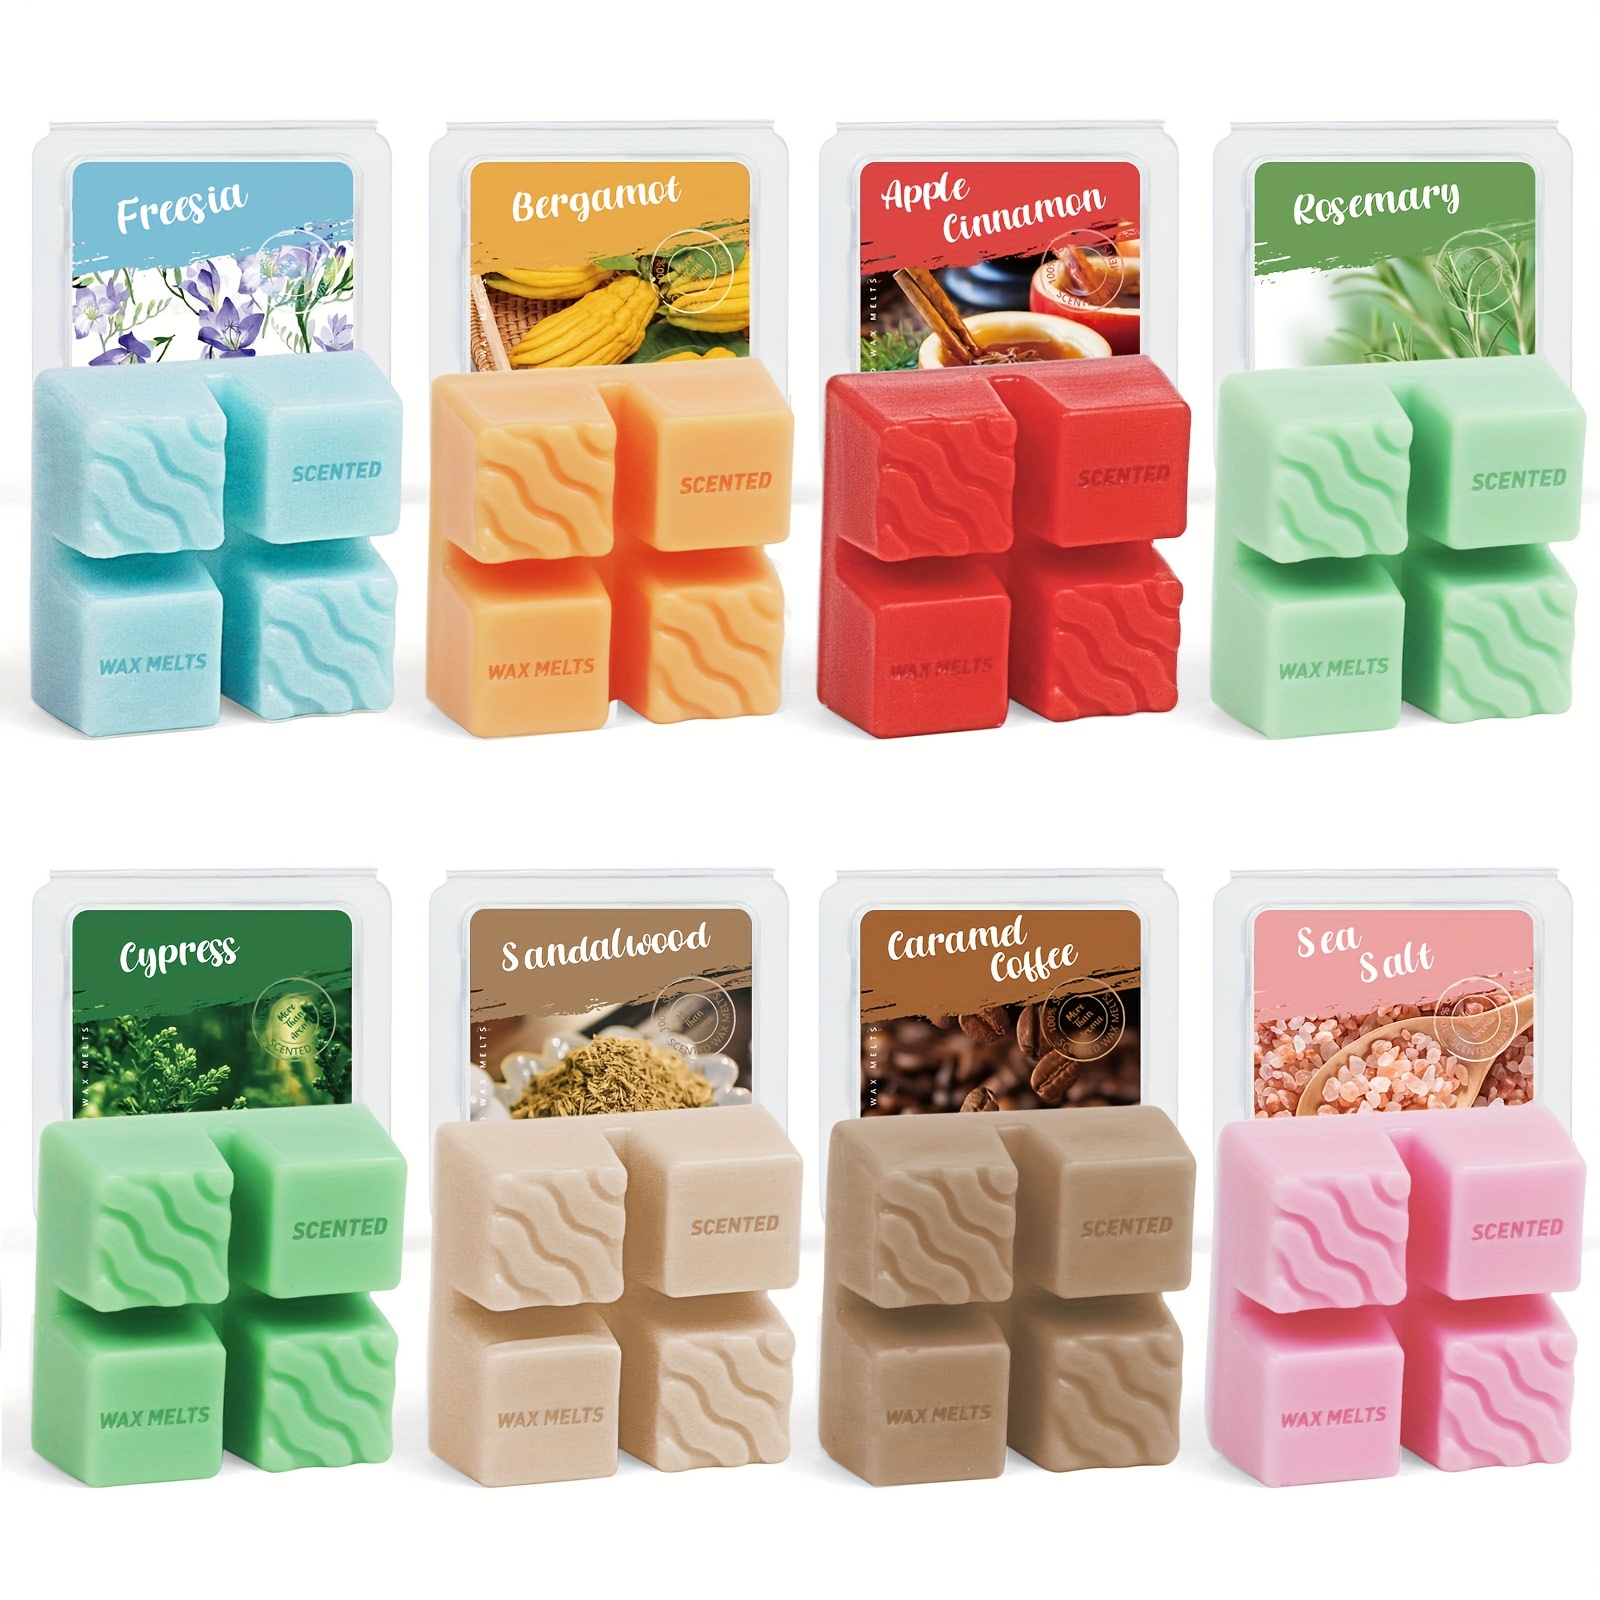 60 Wax Melt Packaging ideas  wax melts packaging, wax melts, wax